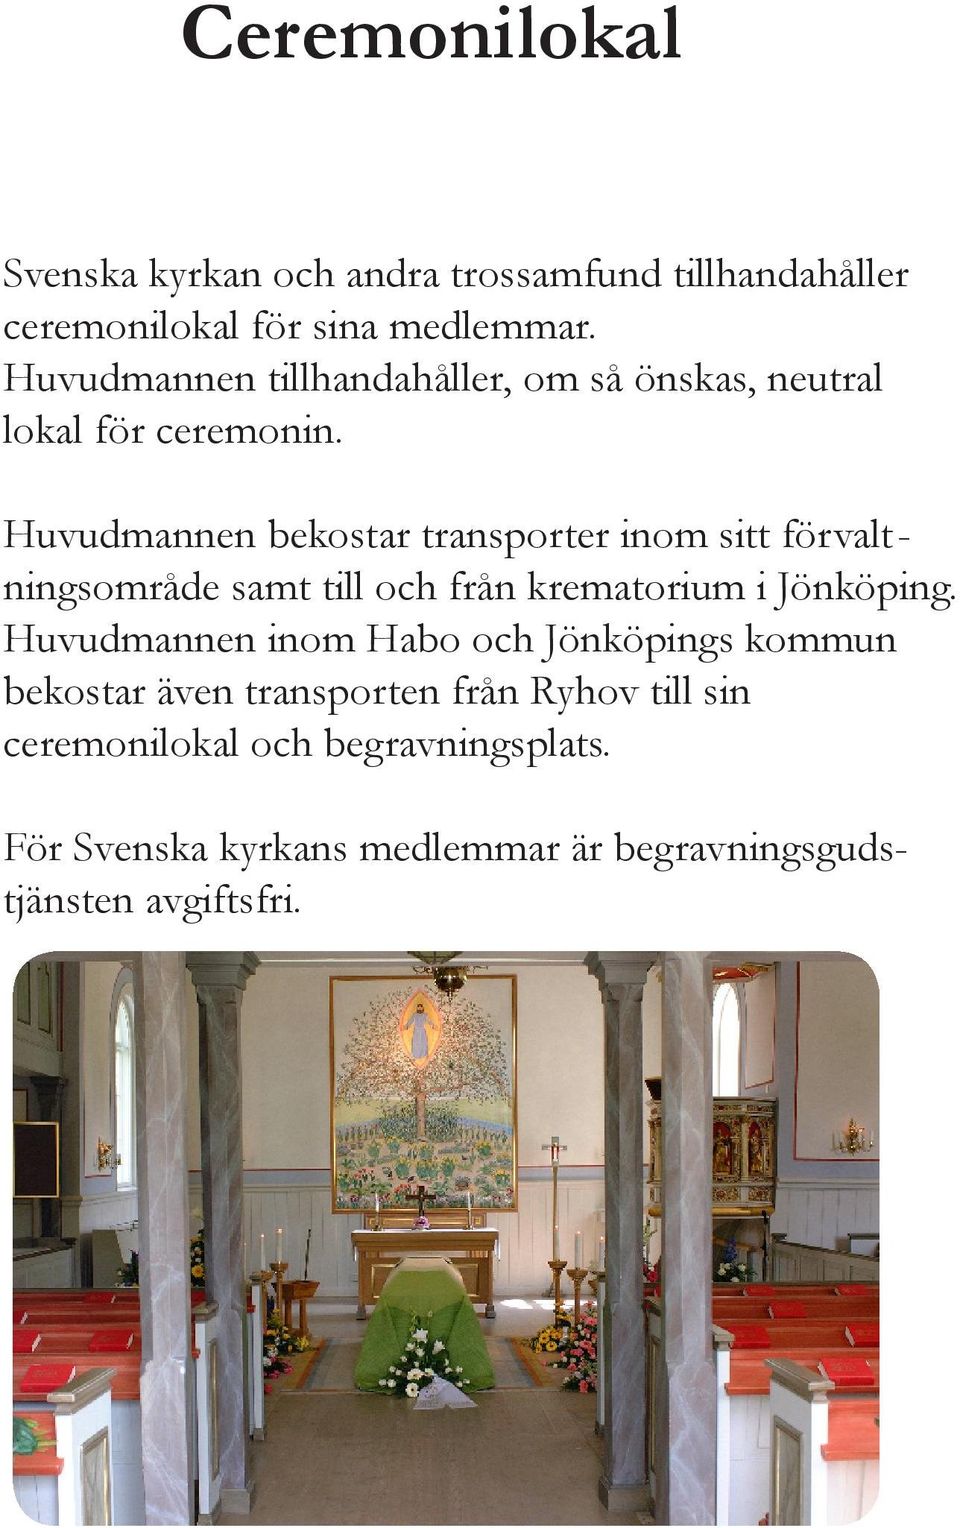 Huvudmannen bekostar transporter inom sitt förvalt - ningsområde samt till och från krematorium i Jönköping.